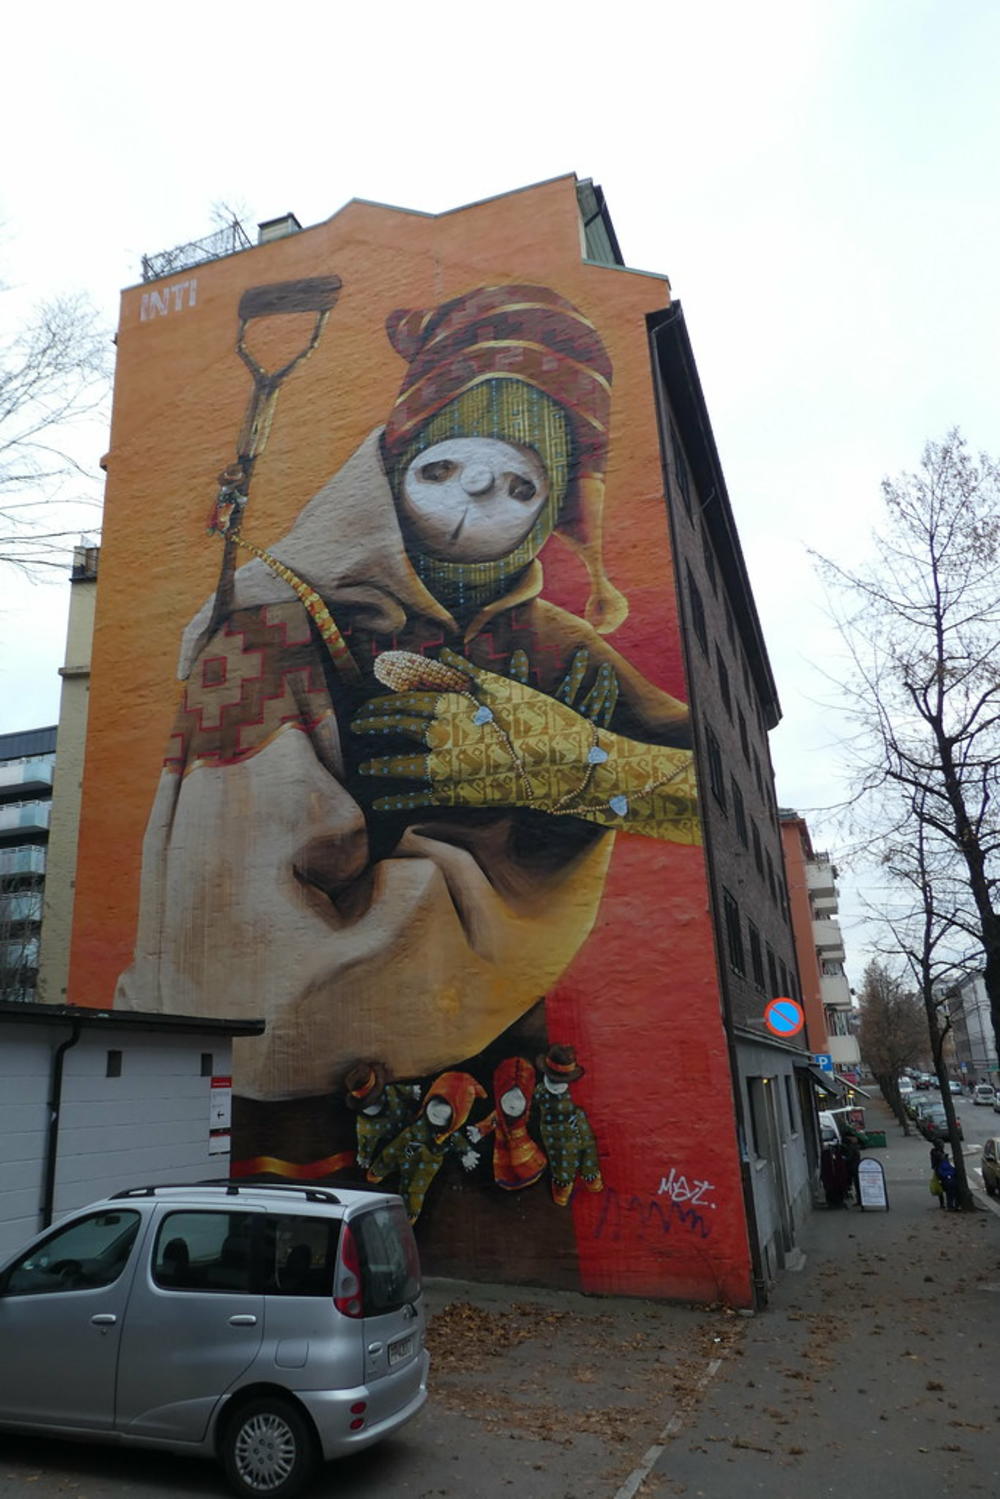 Intjev mural u Oslu, Norveška